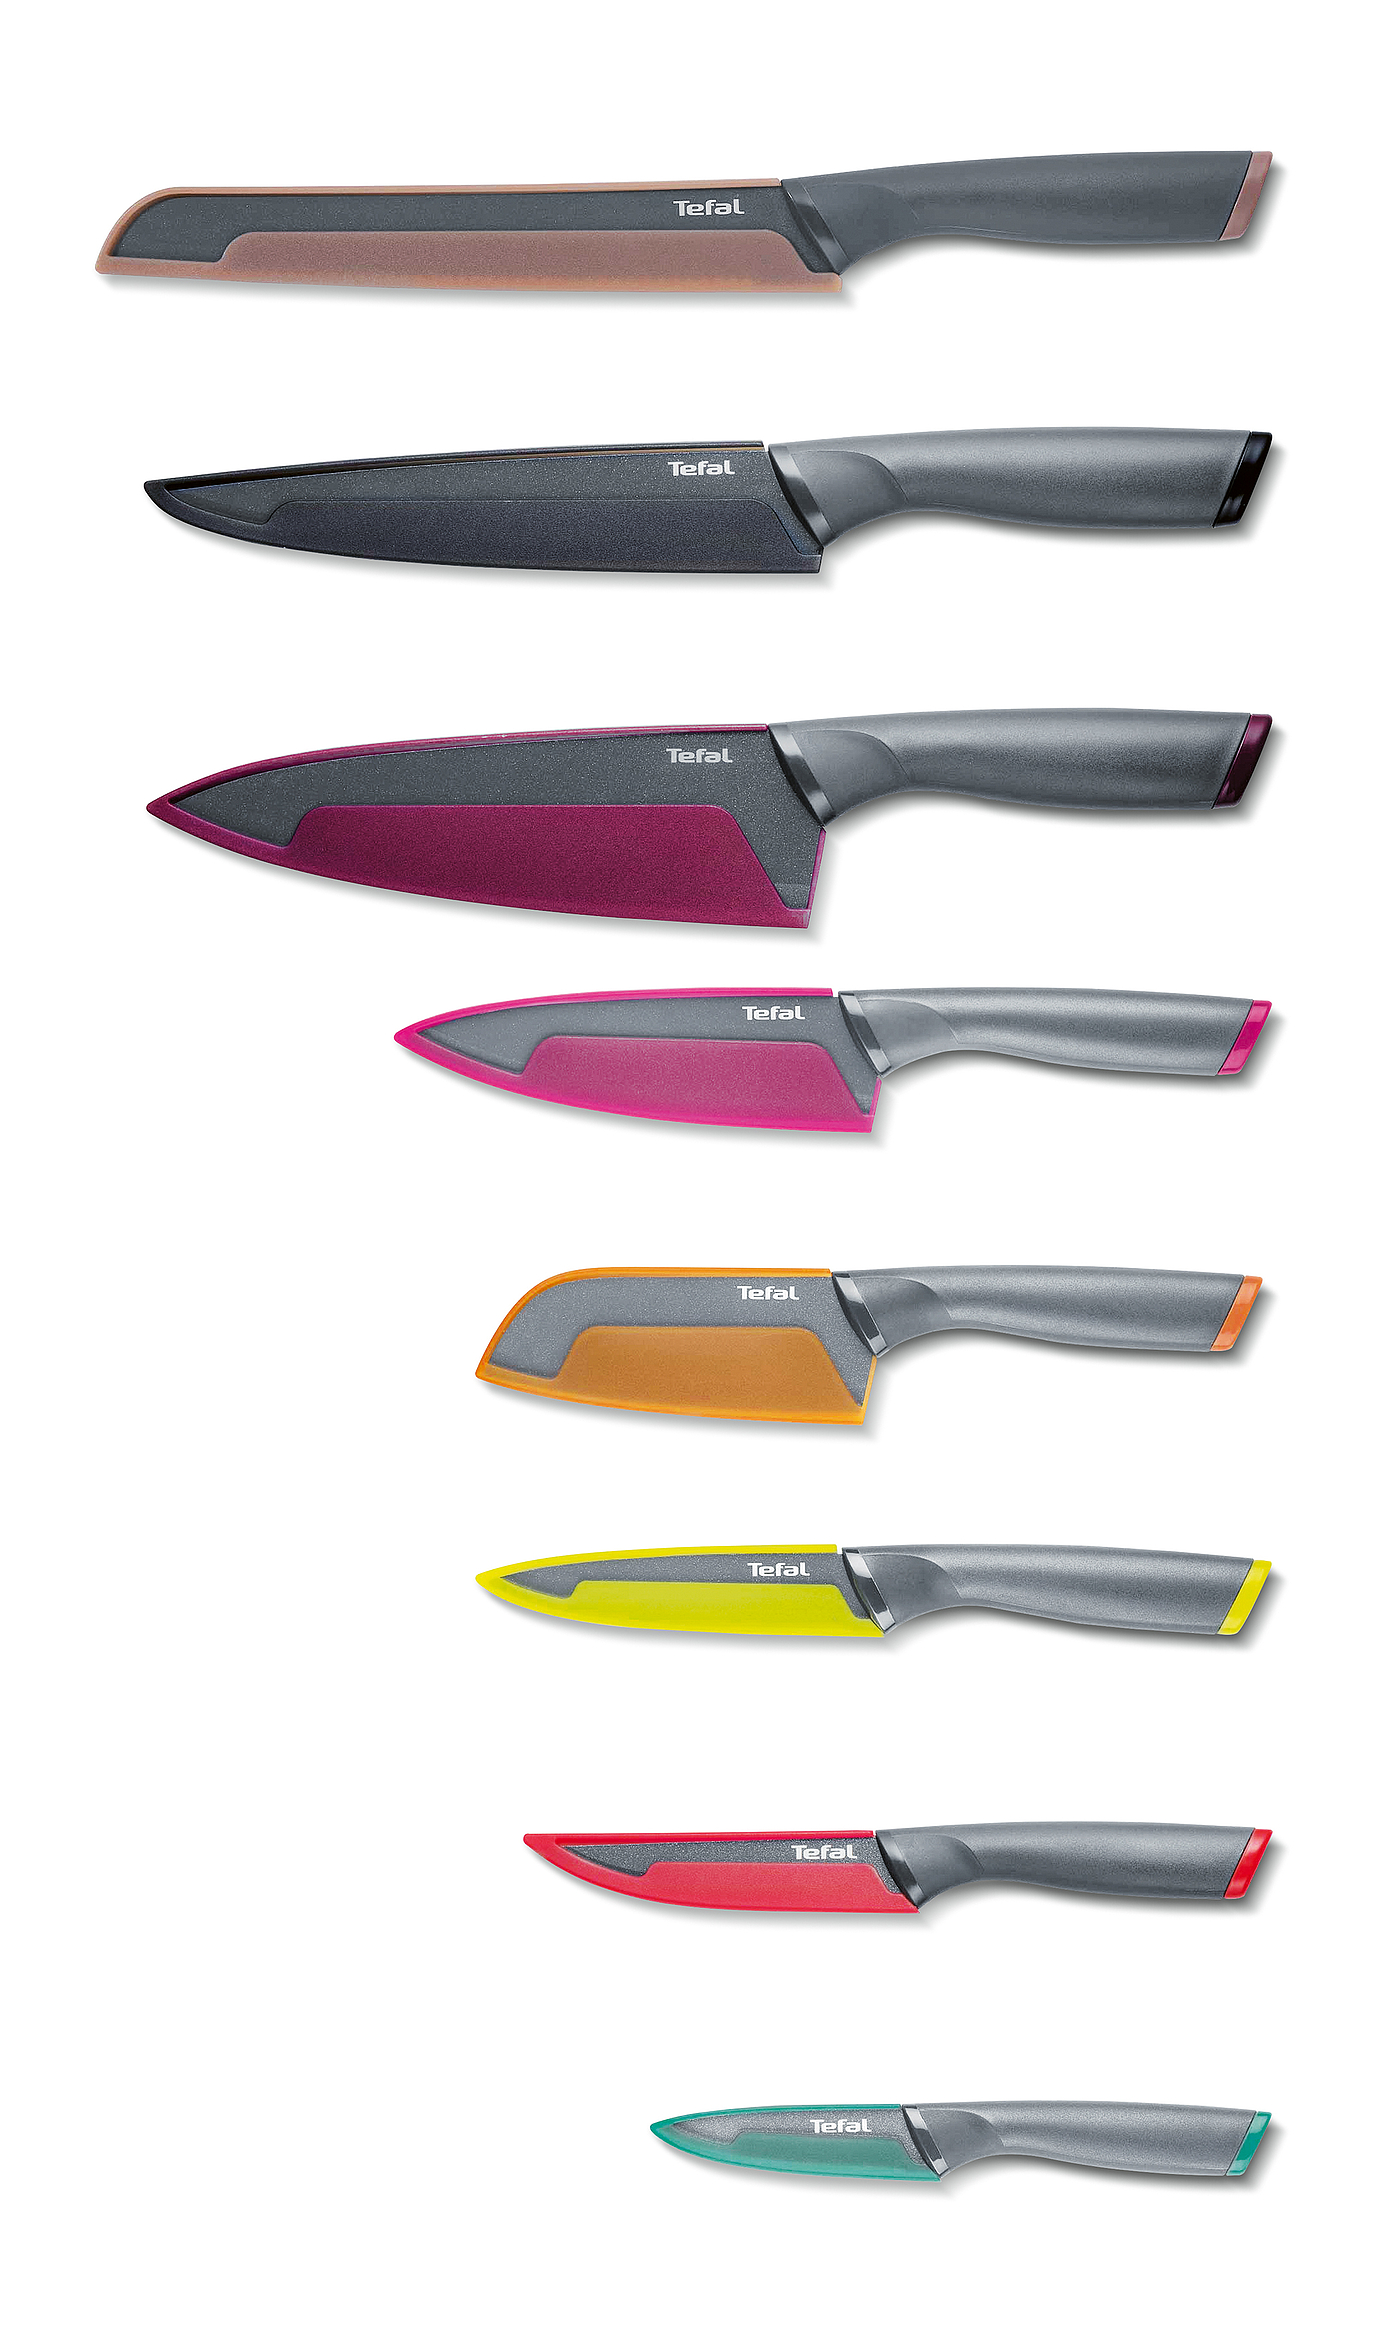 2019红点产品设计大奖，红点奖，reddot，刀具，Tefal，菜刀，彩色，Küchenmesser-Serie，